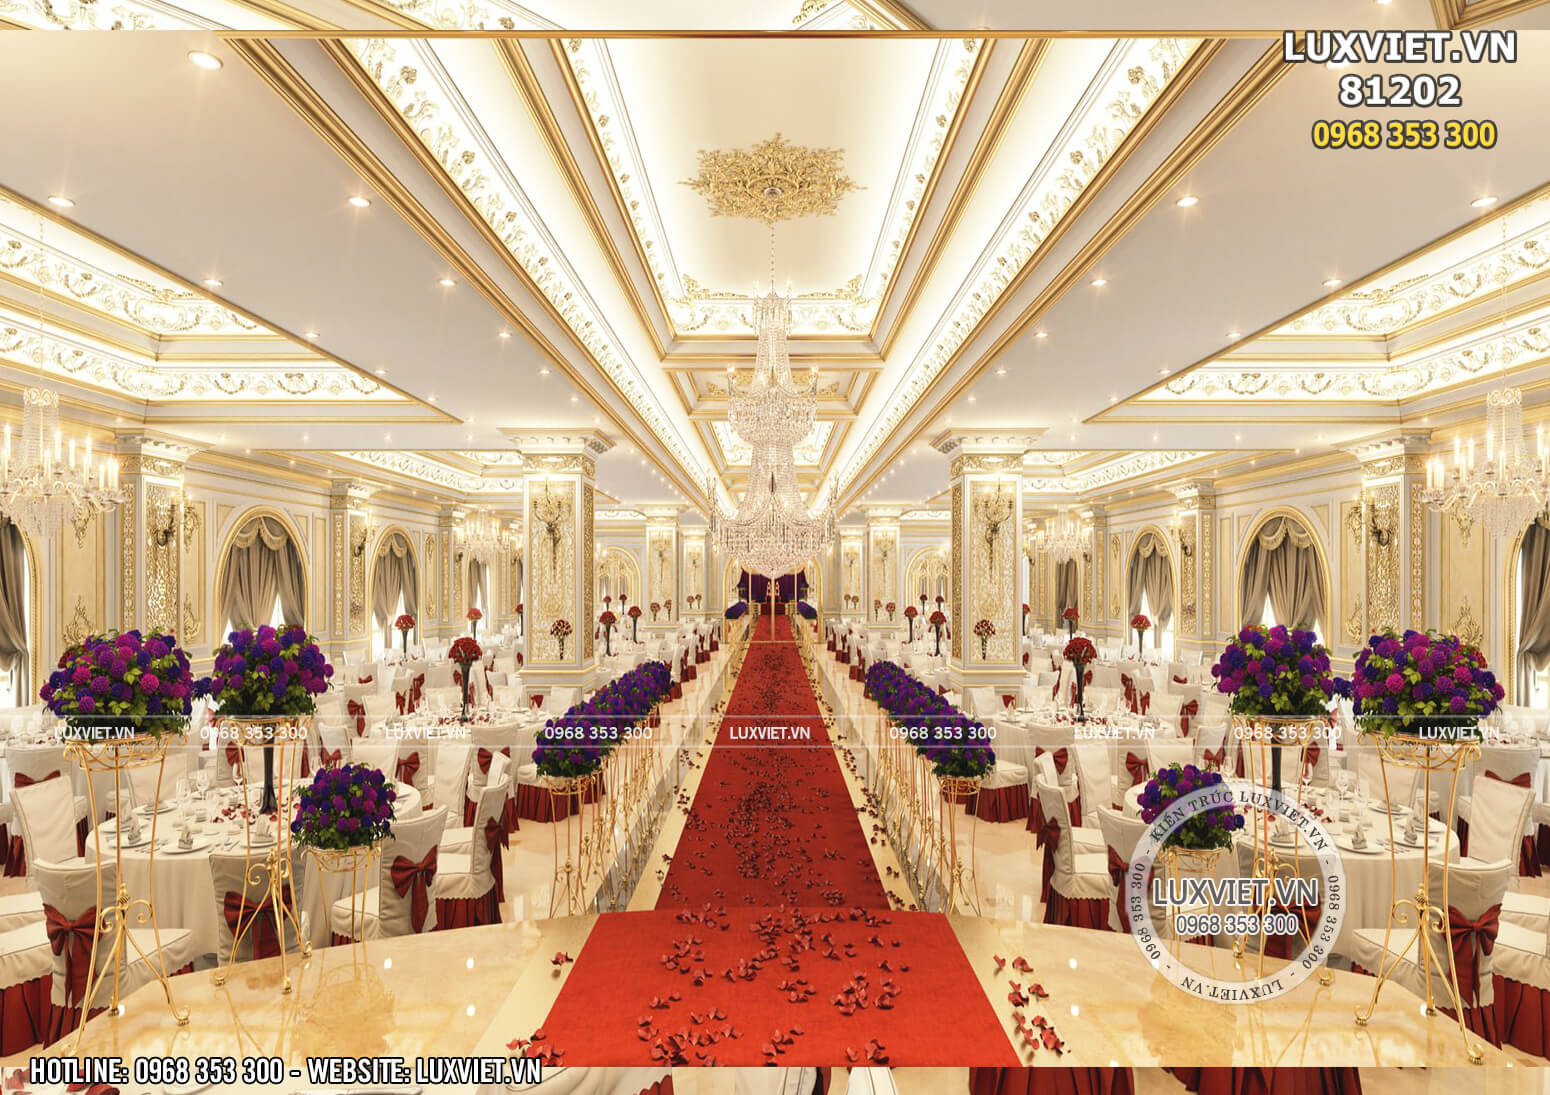 Hình ảnh: Thiết kế không gian nội thất trung tâm tiệc cưới - LV 81202